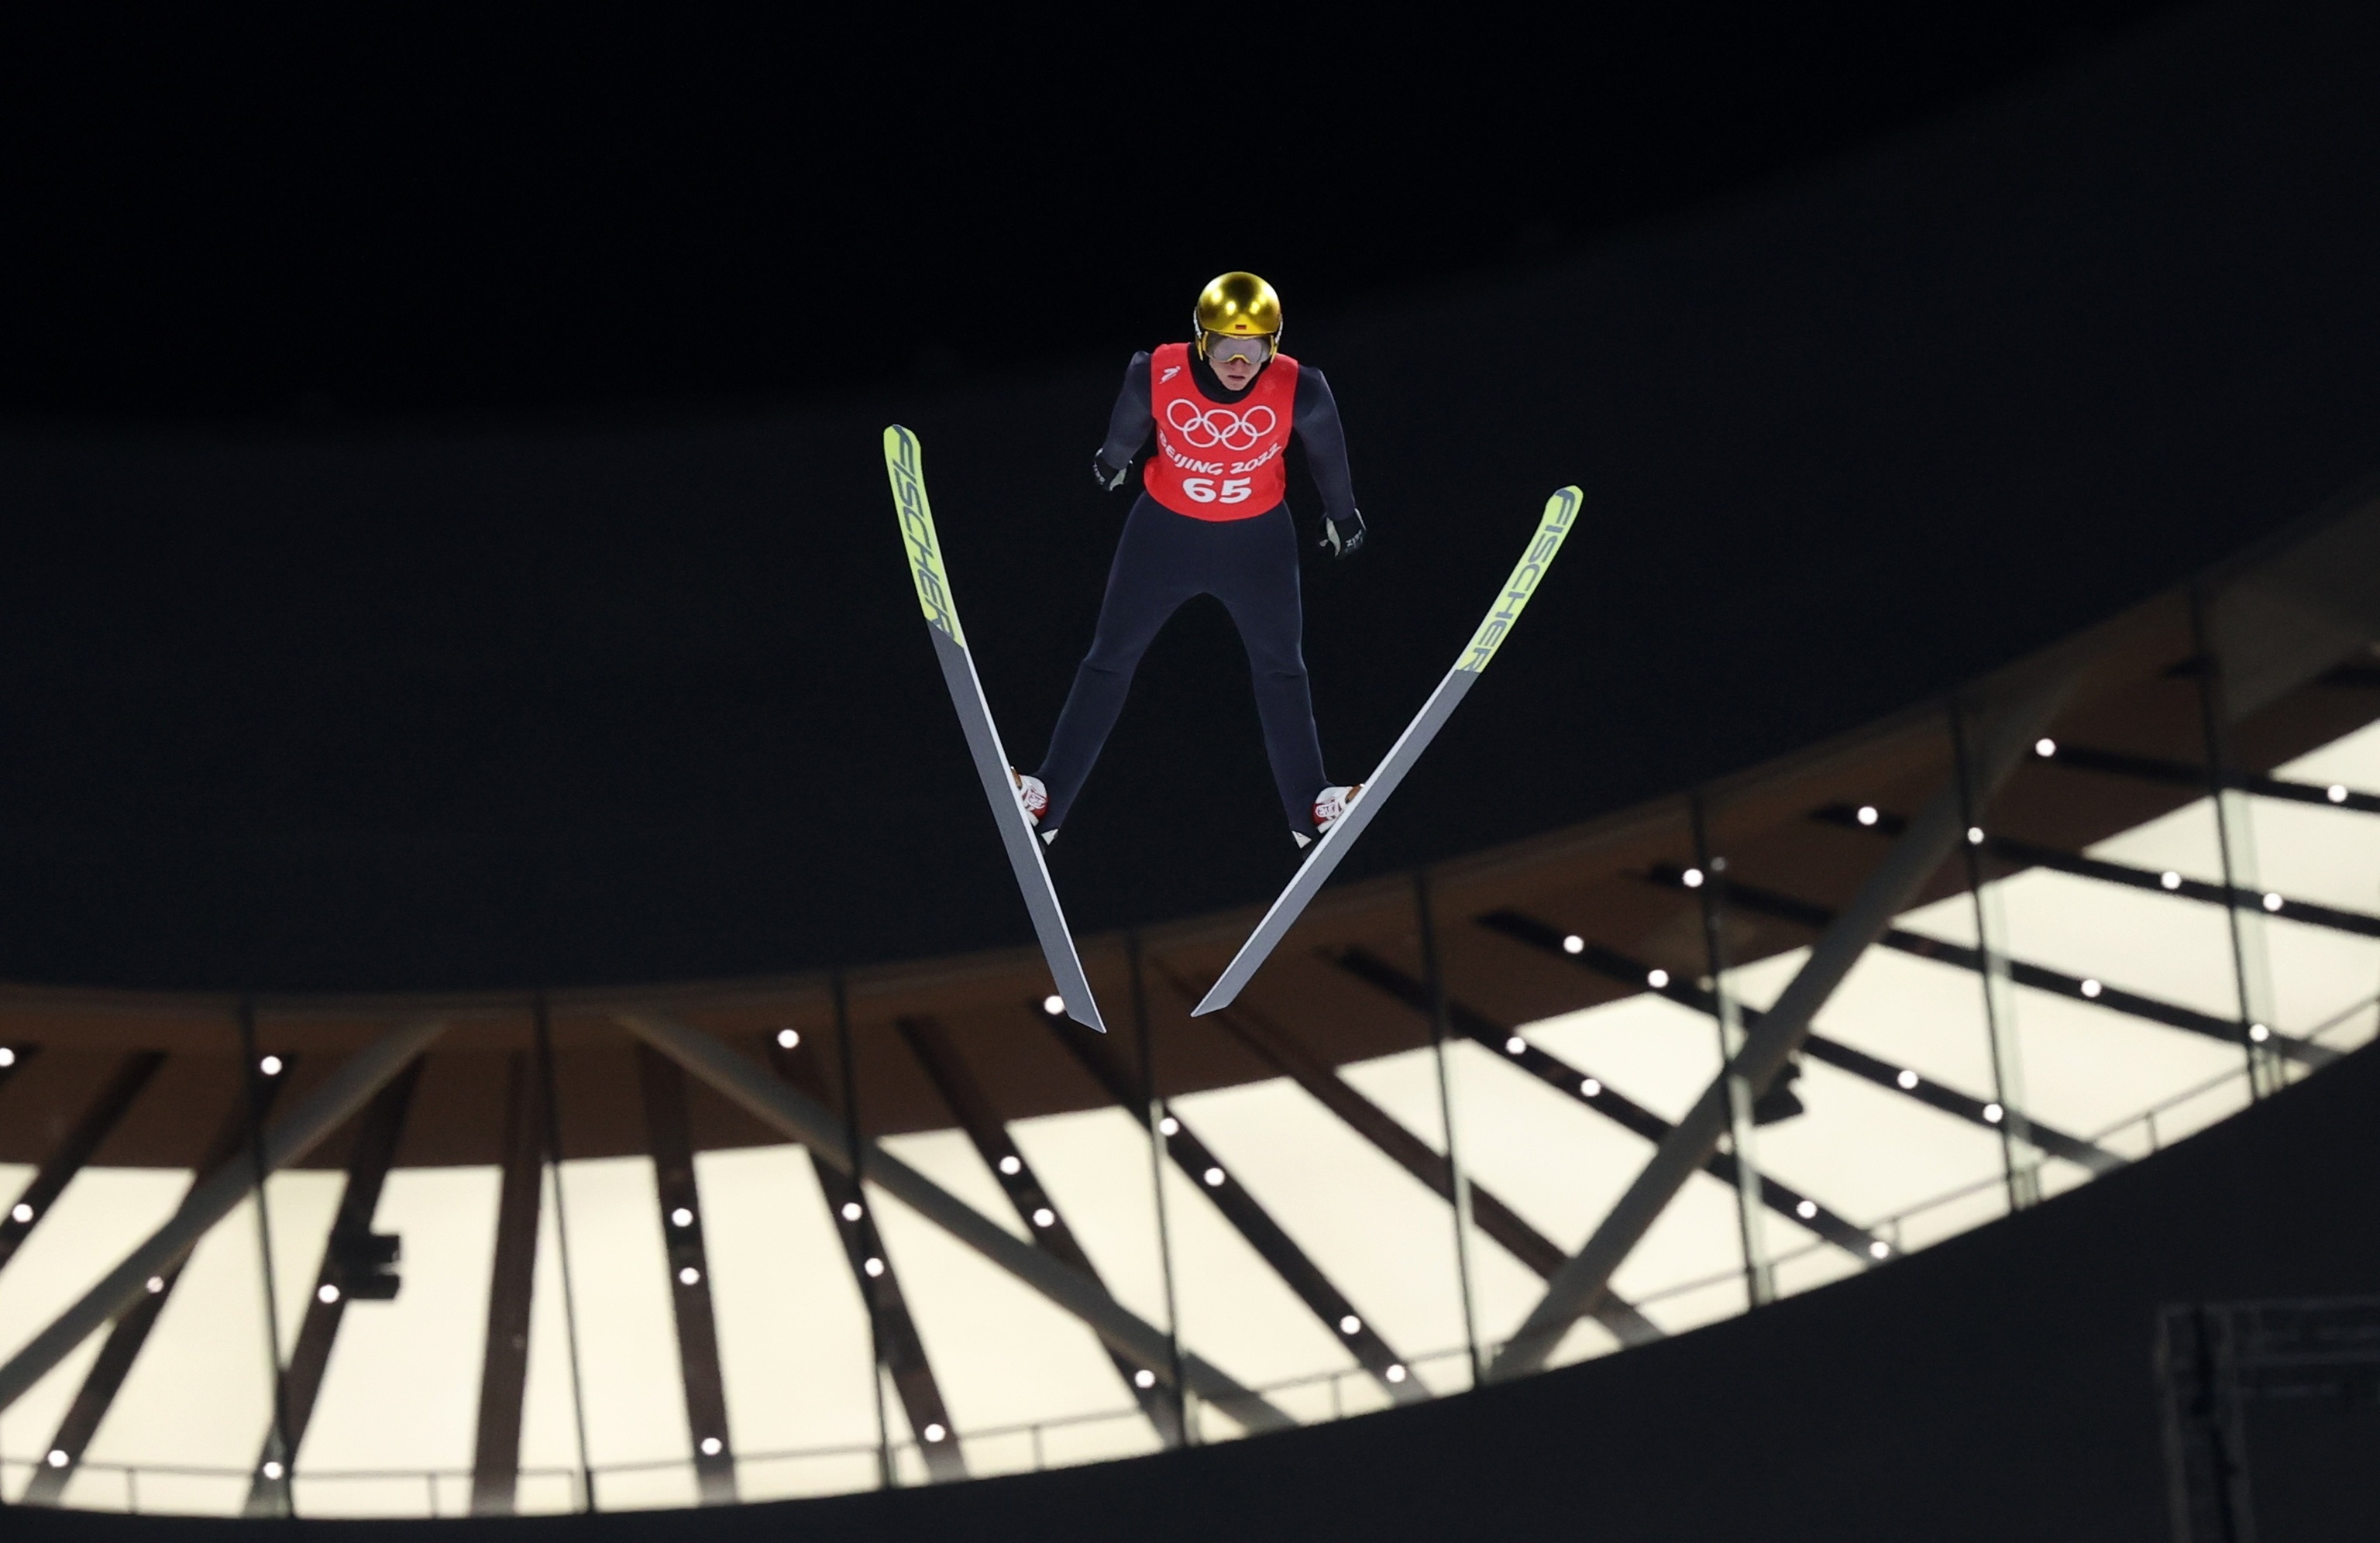 Karl Geiger entrena el salto de esquí antes de la jornada inaugural de los Juegos Olímpicos de Invierno en Pekín.